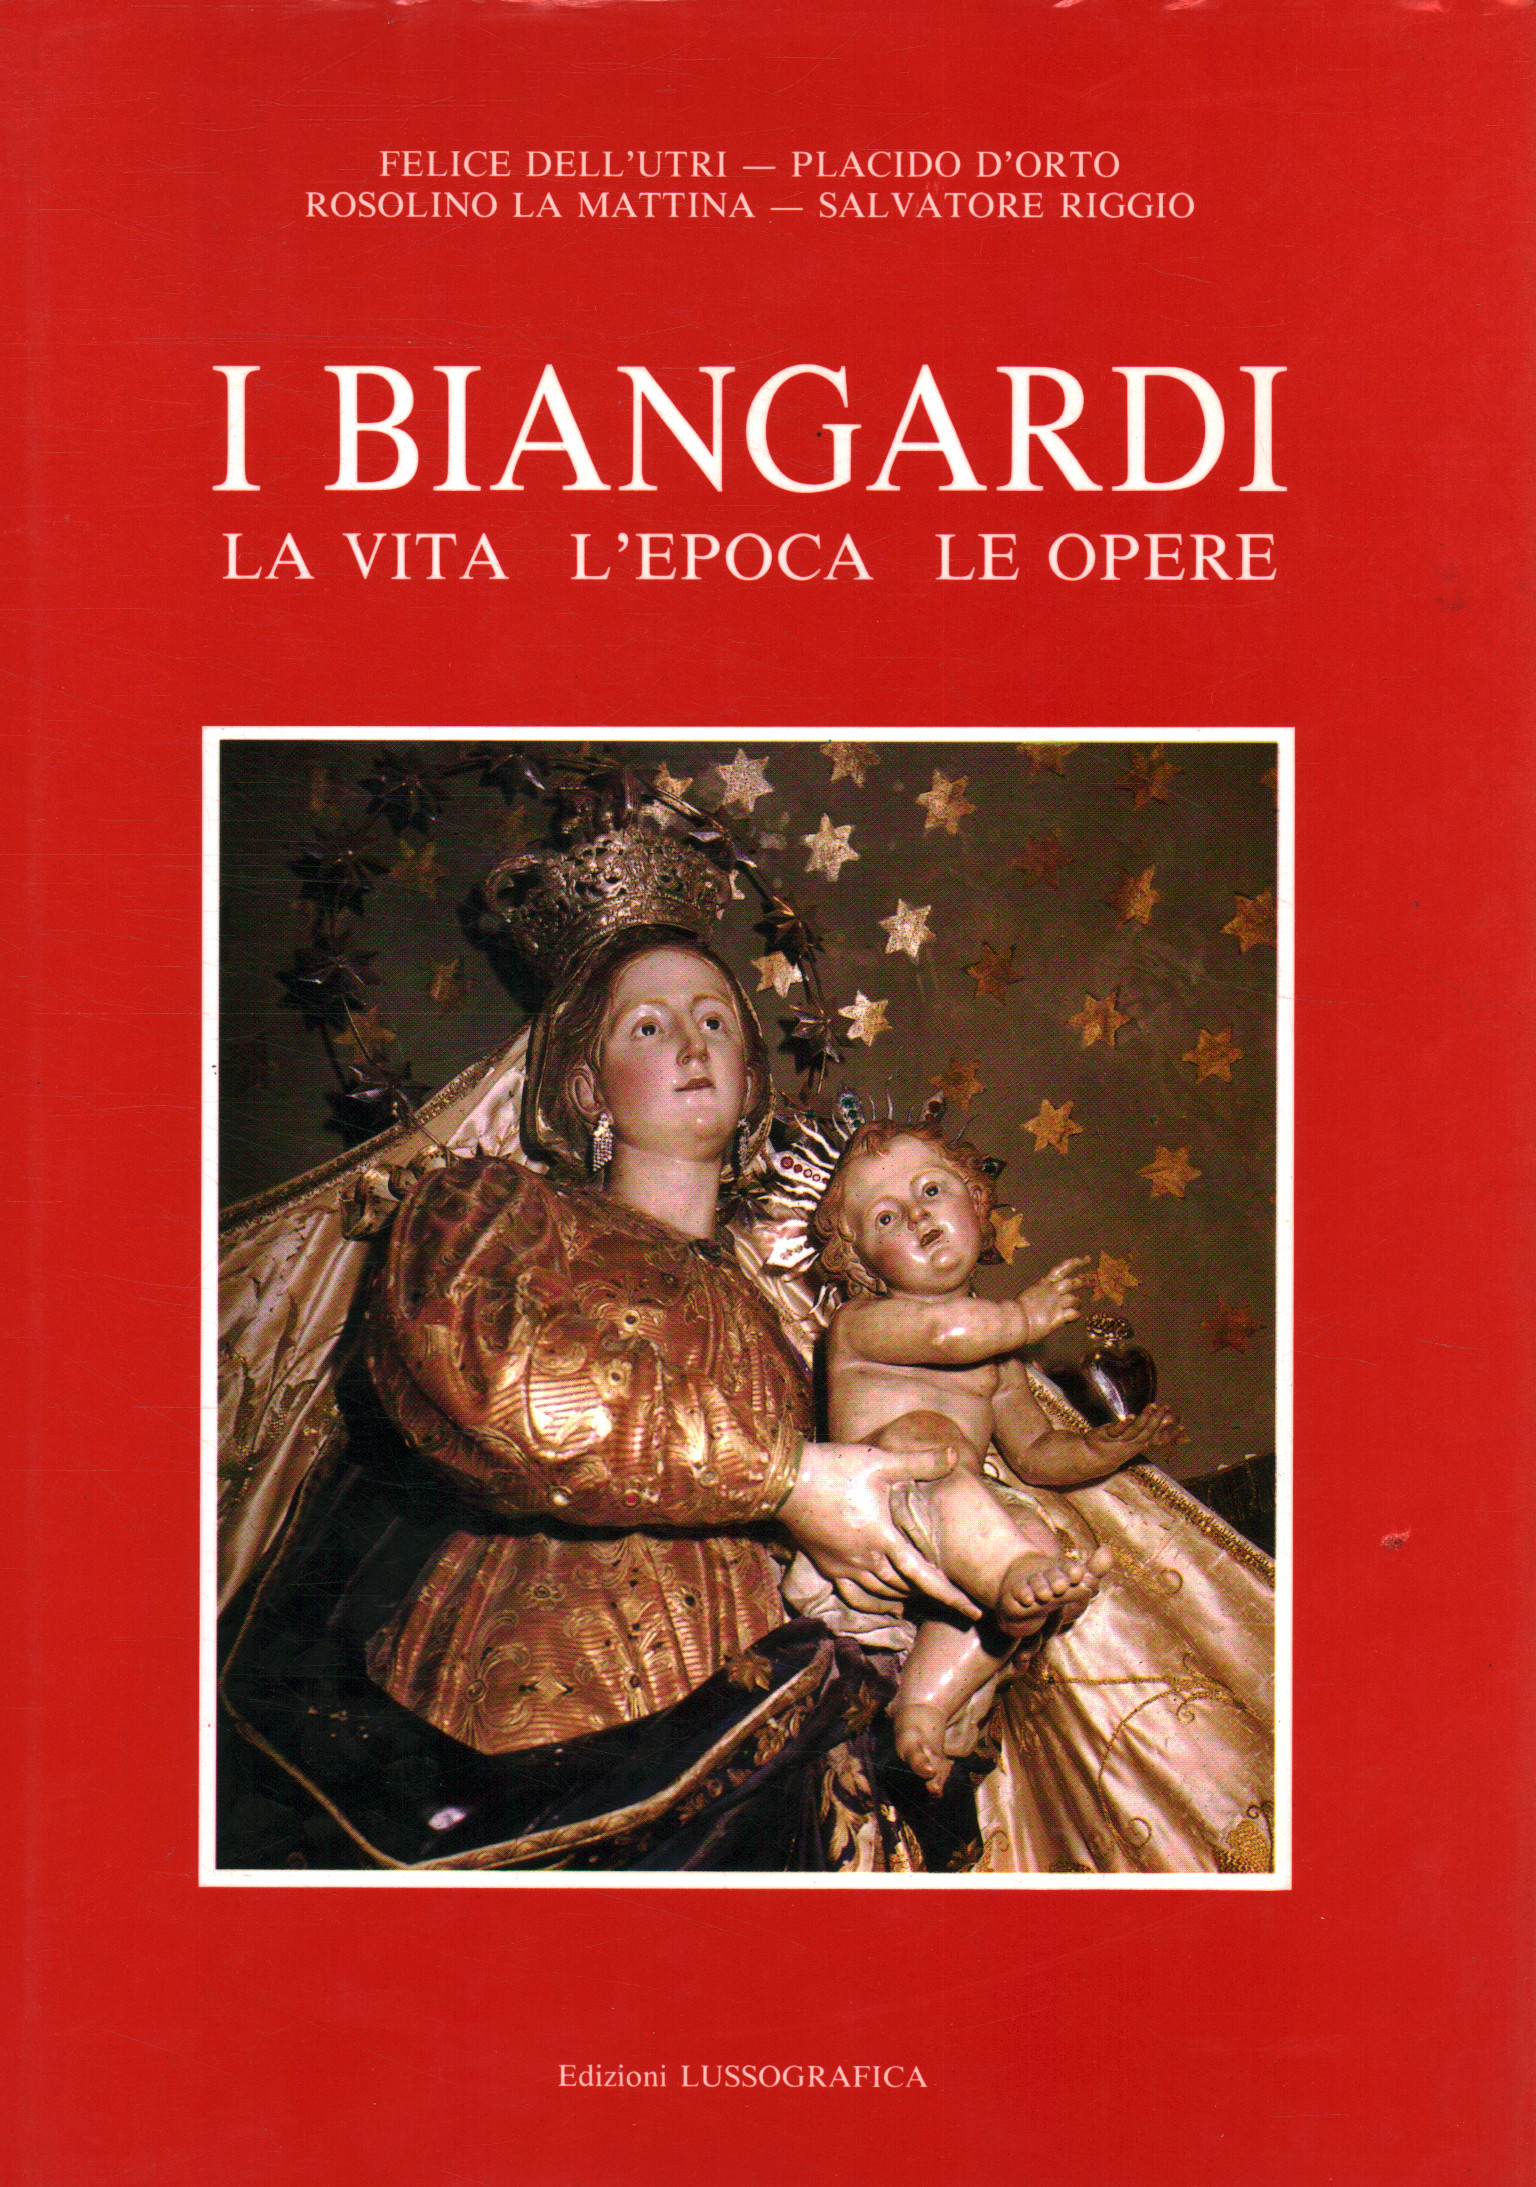 The Biangardi